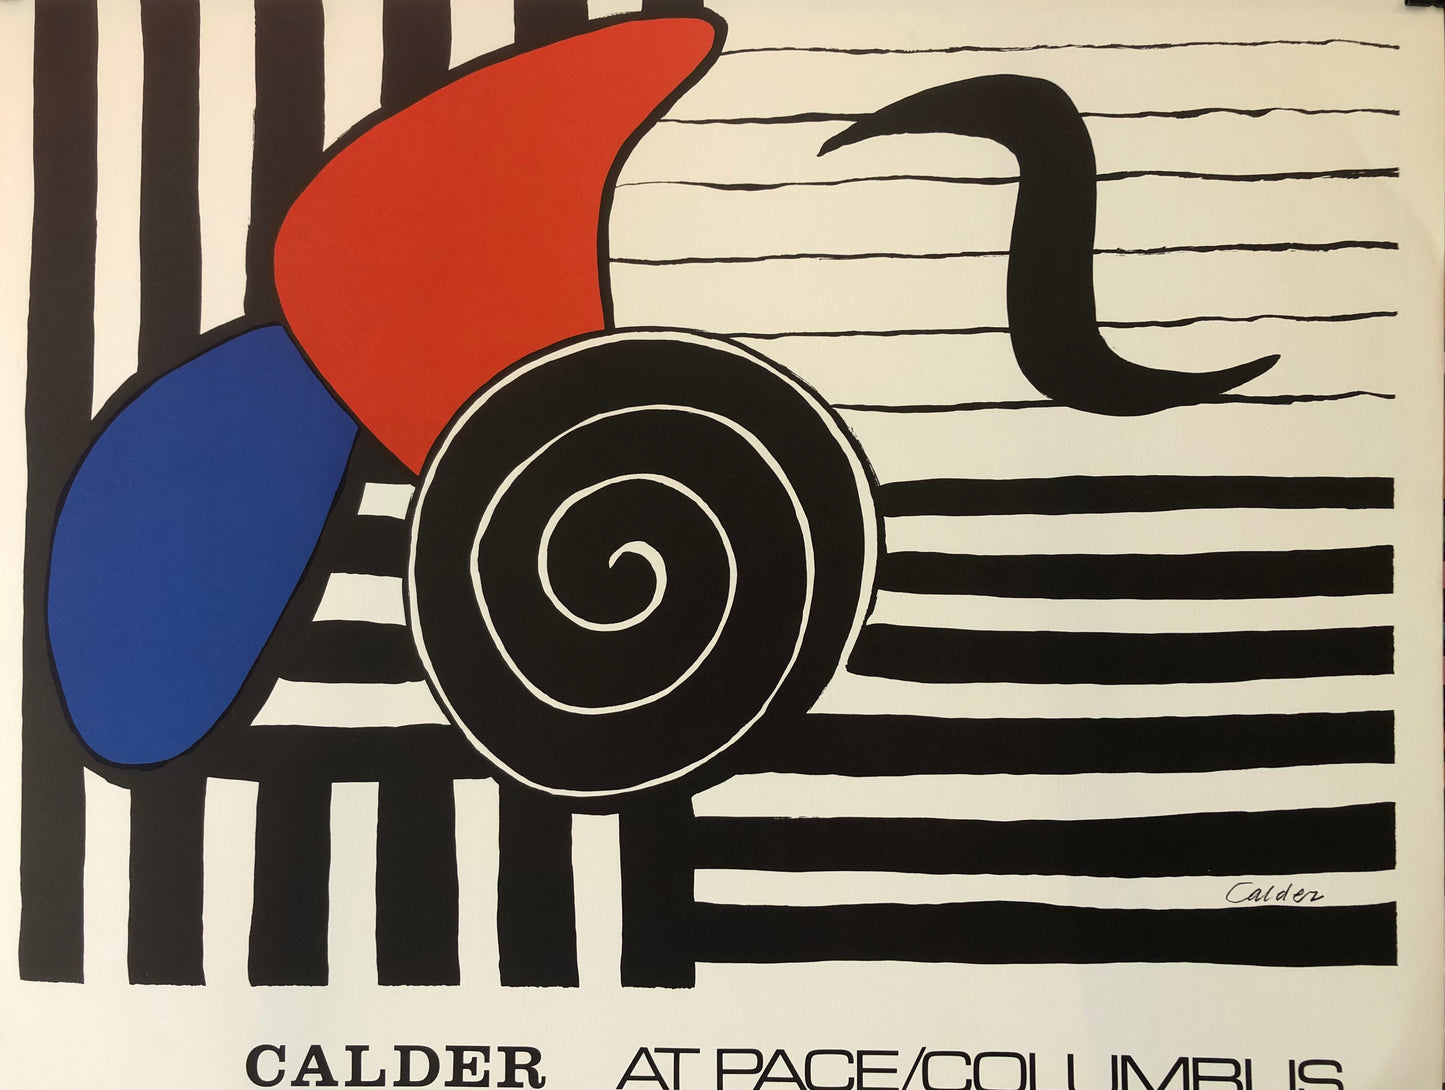 Calder Exhibition Poster, Pace/Columbus